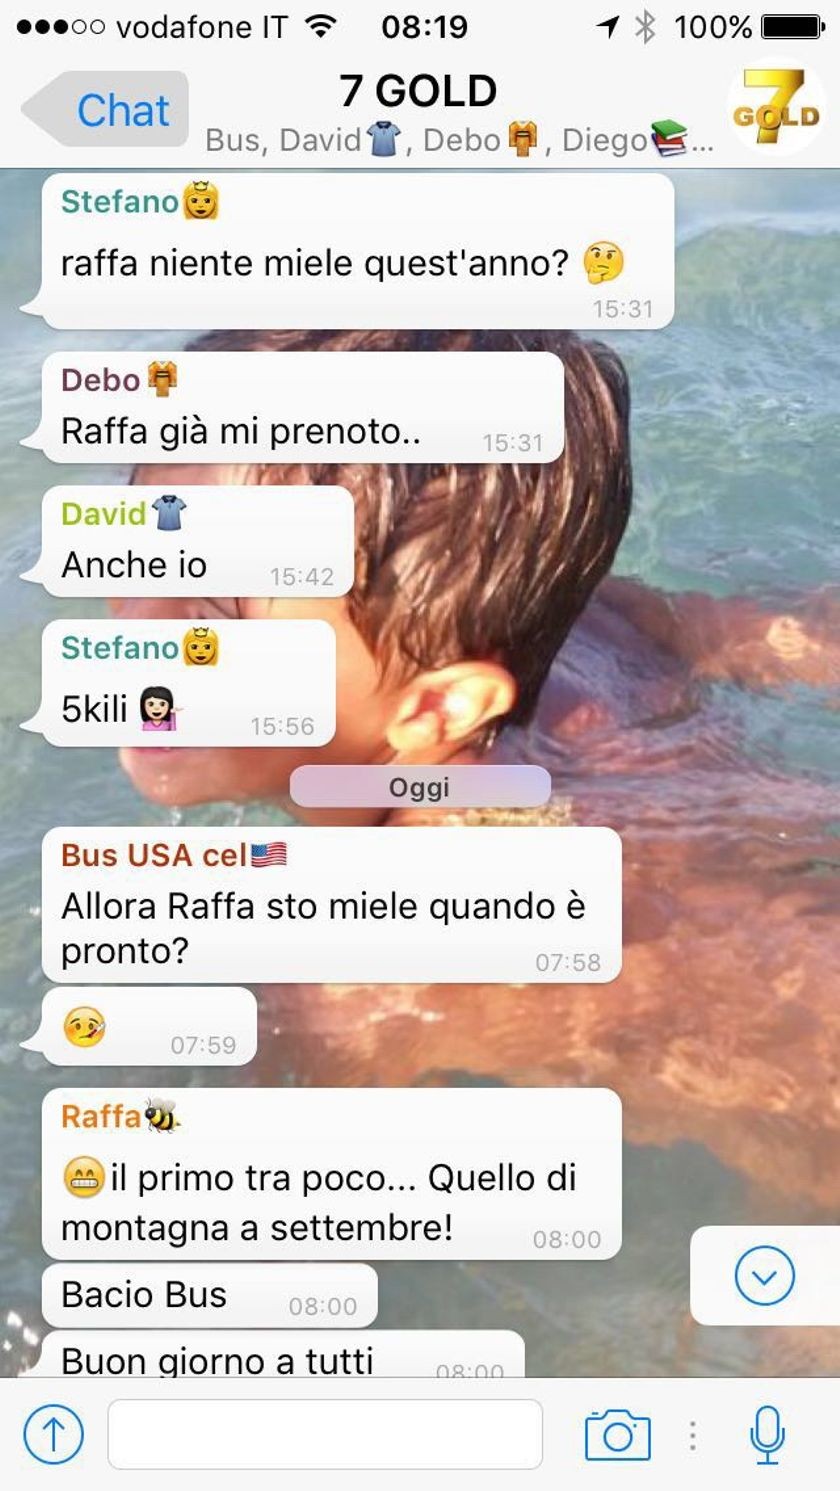 WhatsApp group messaging in Italian